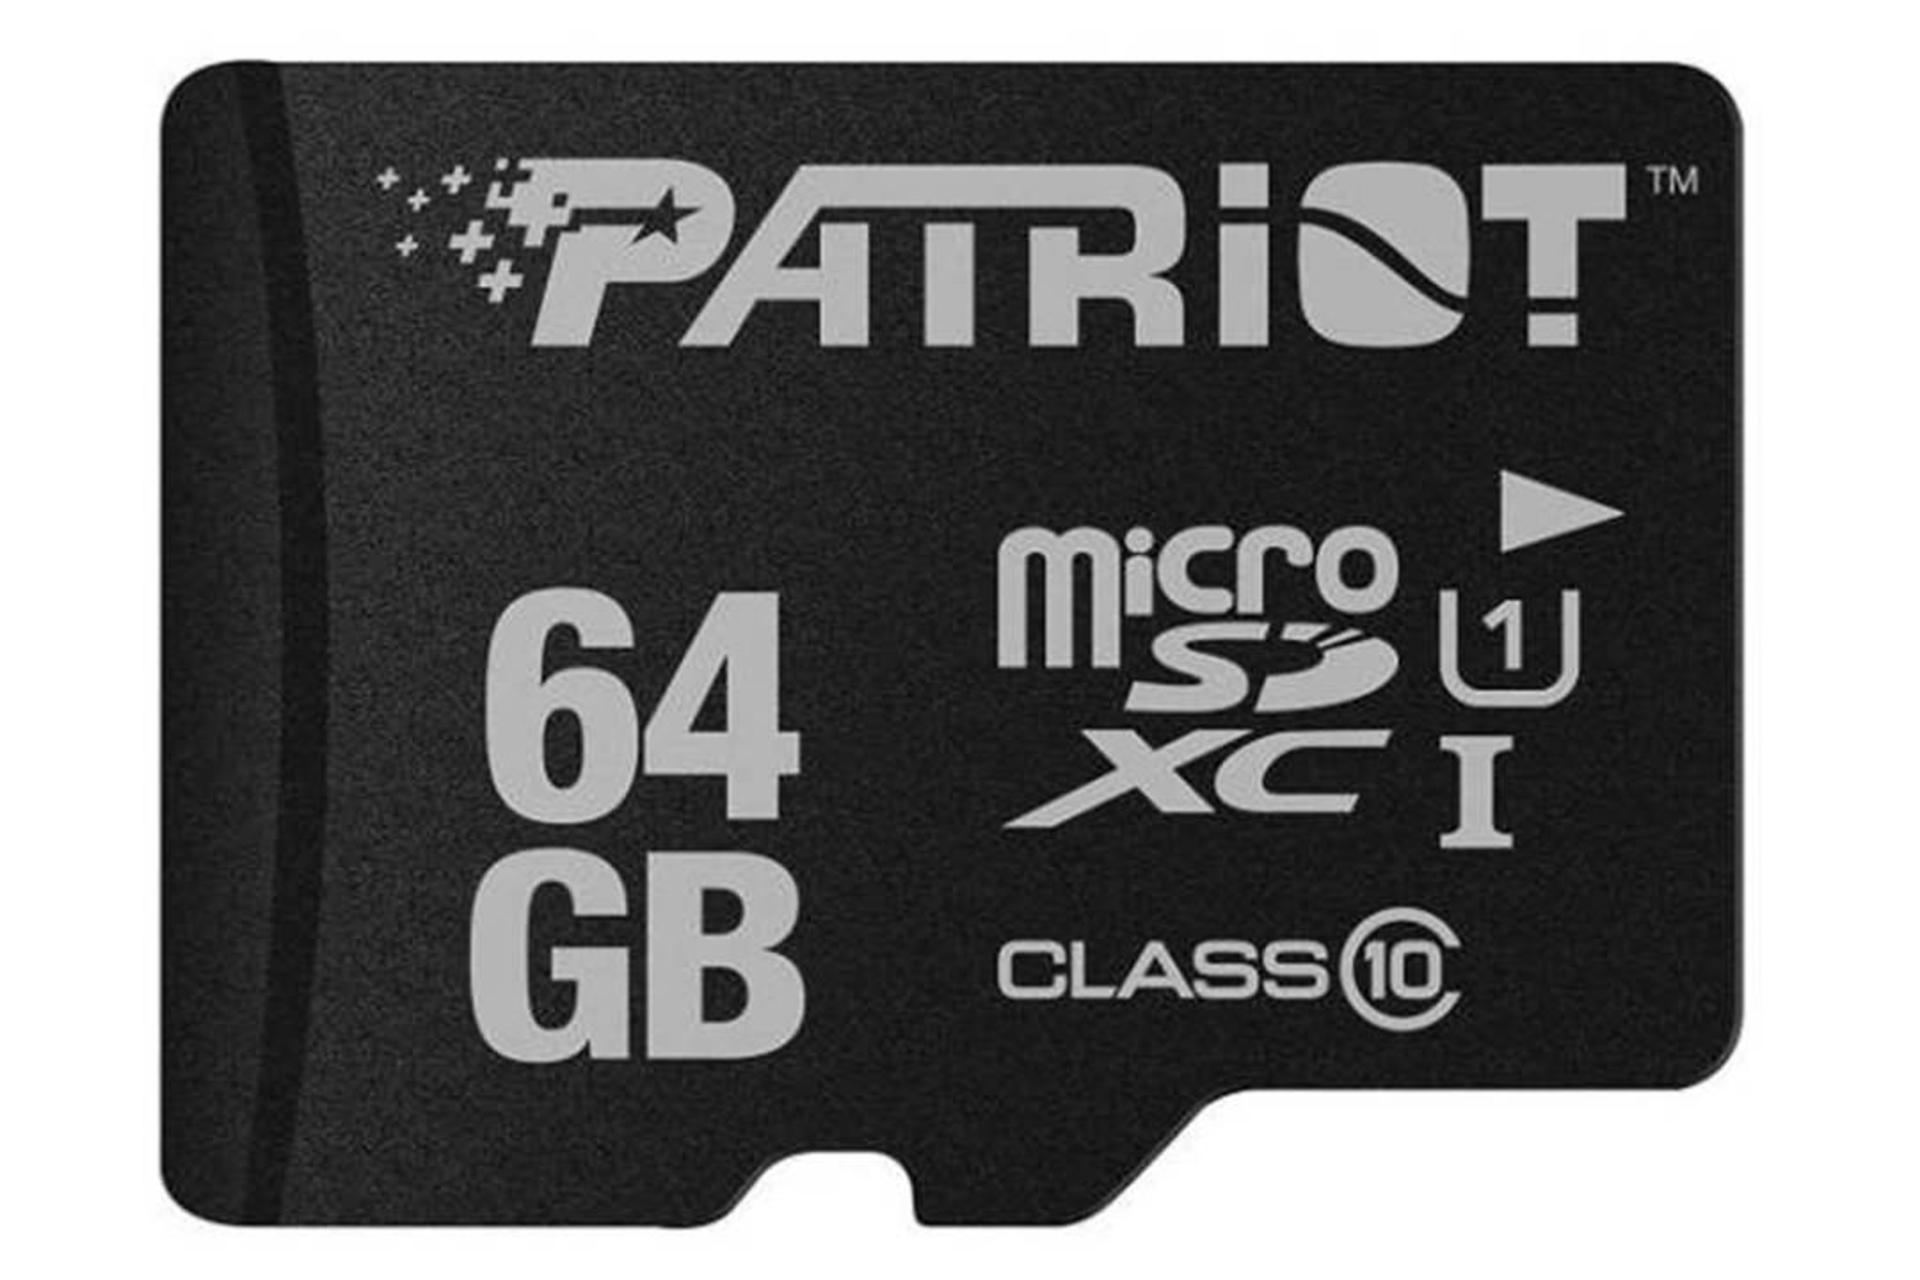 Patriot LX microSDXC Class 10 UHS-I U1 64GB